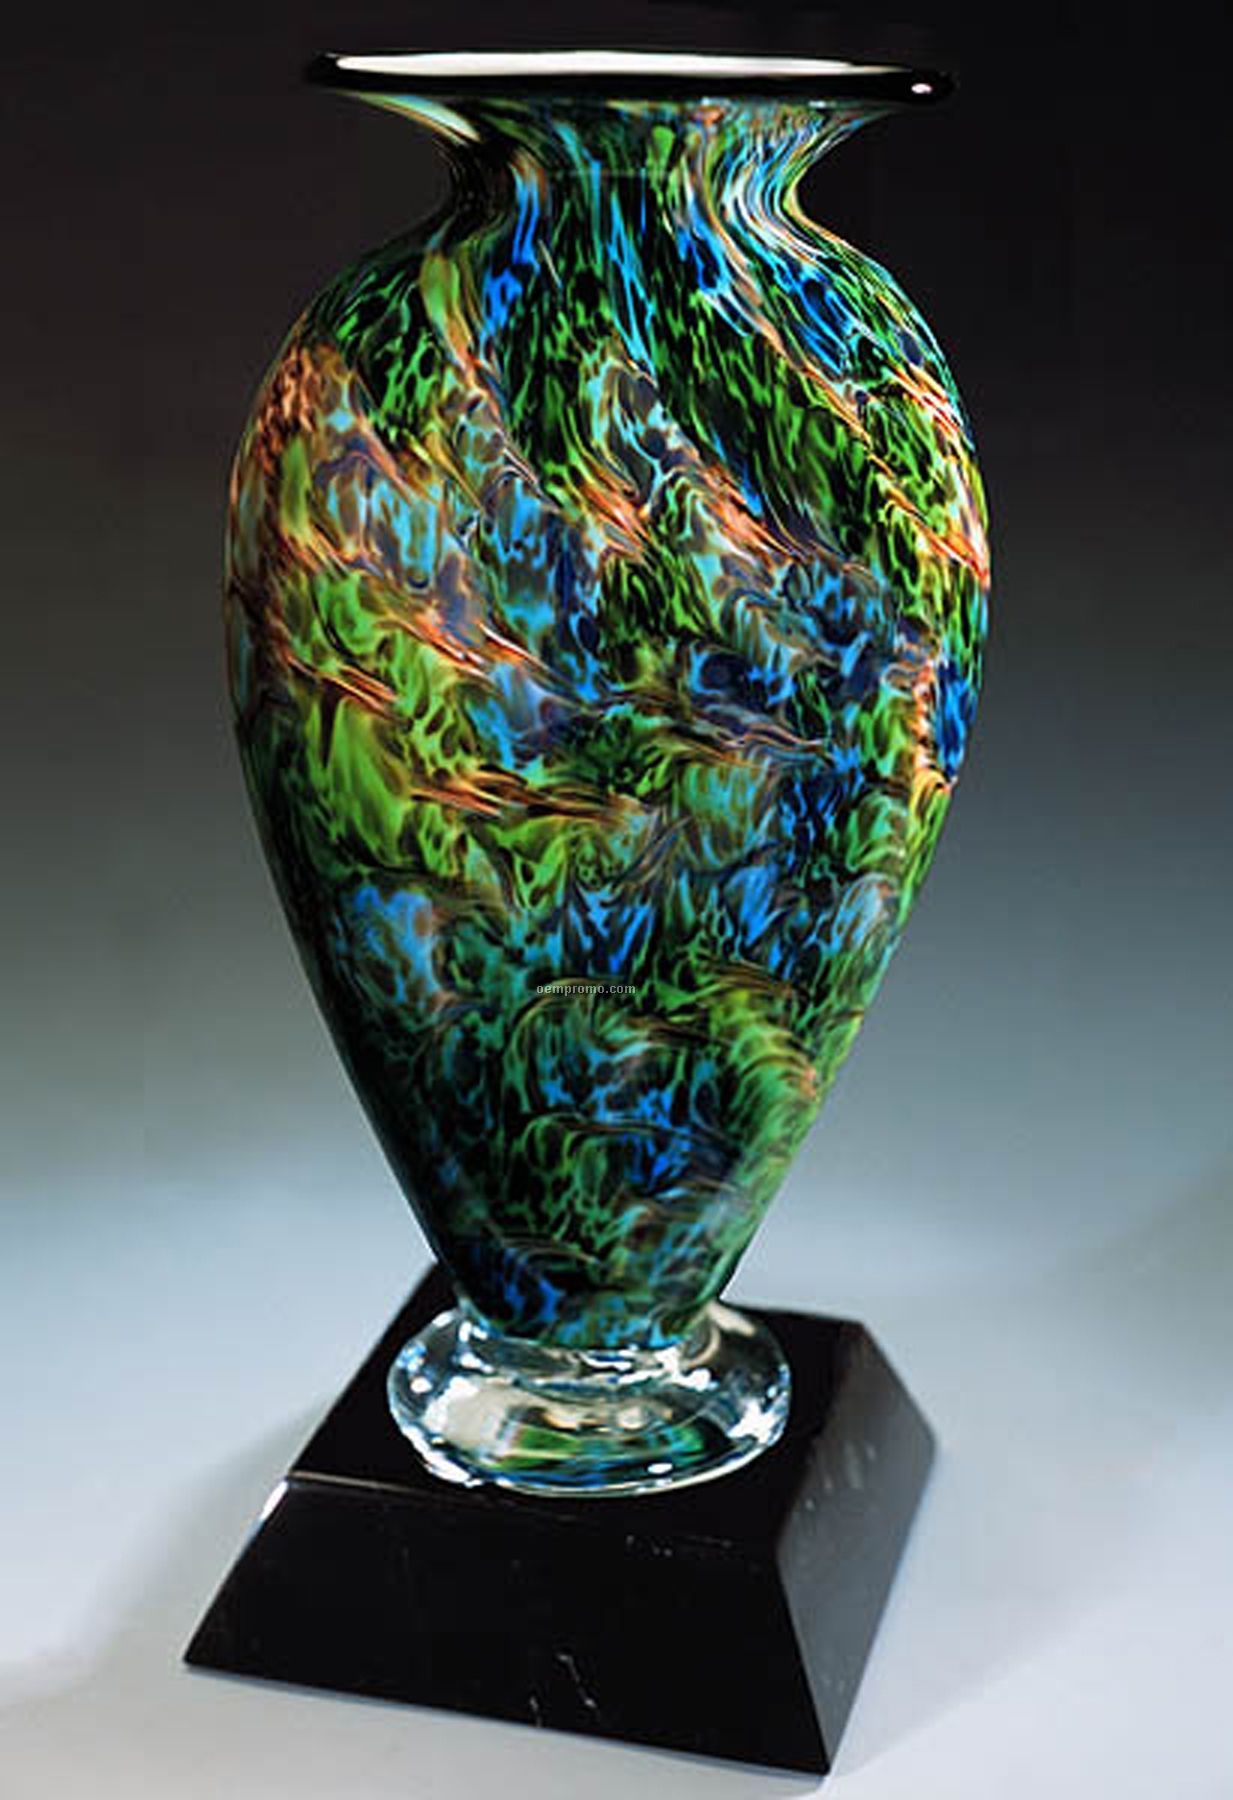 Jade Glen Mercury Sculpture Award W/ Marble Base (3.75